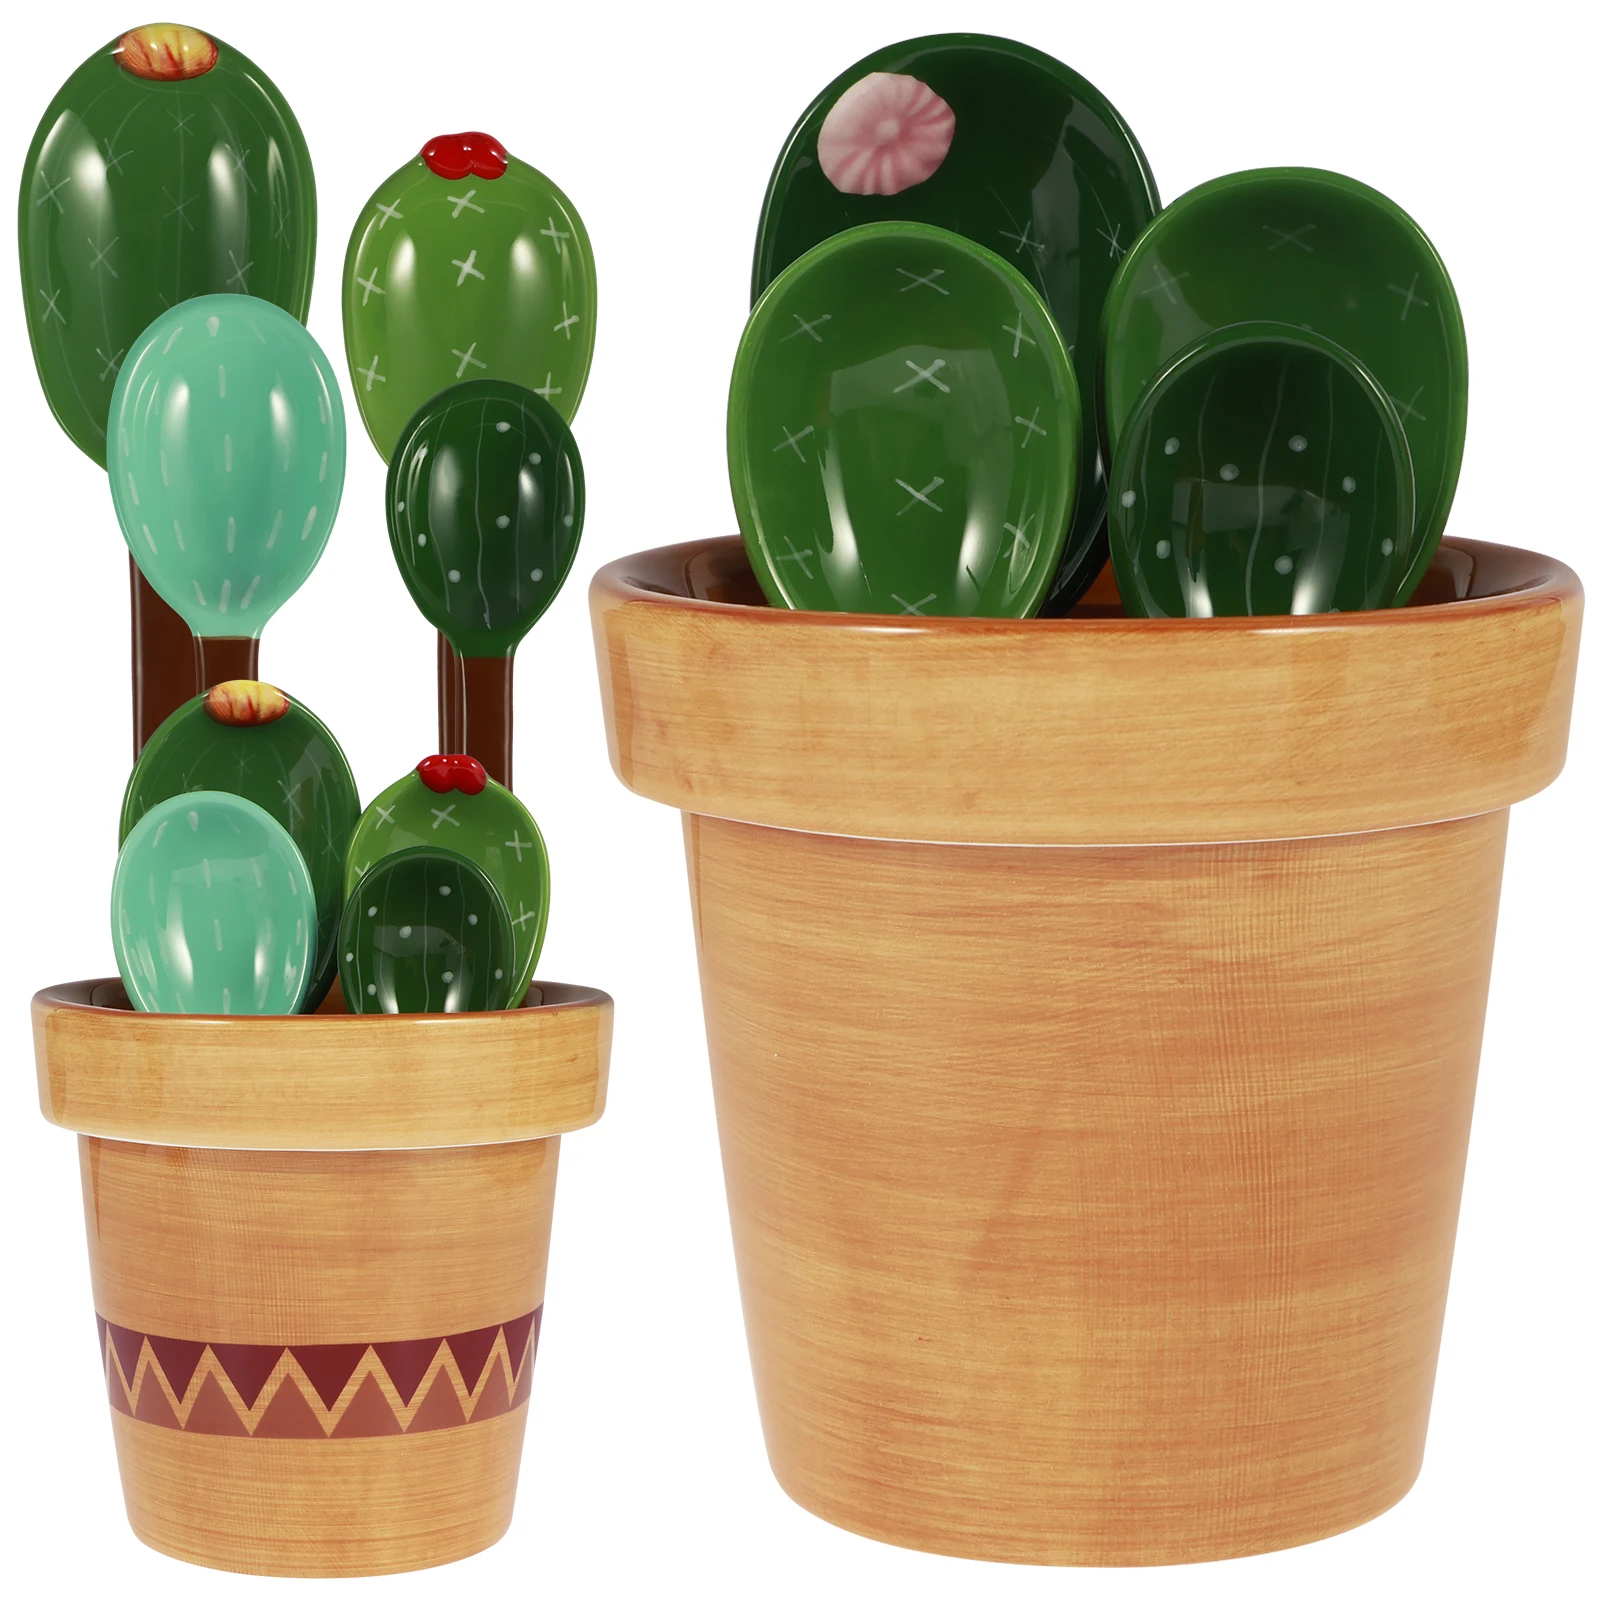 4Pcs Porcelain Measuring Spoons Set with Base Cute Cactus Shape